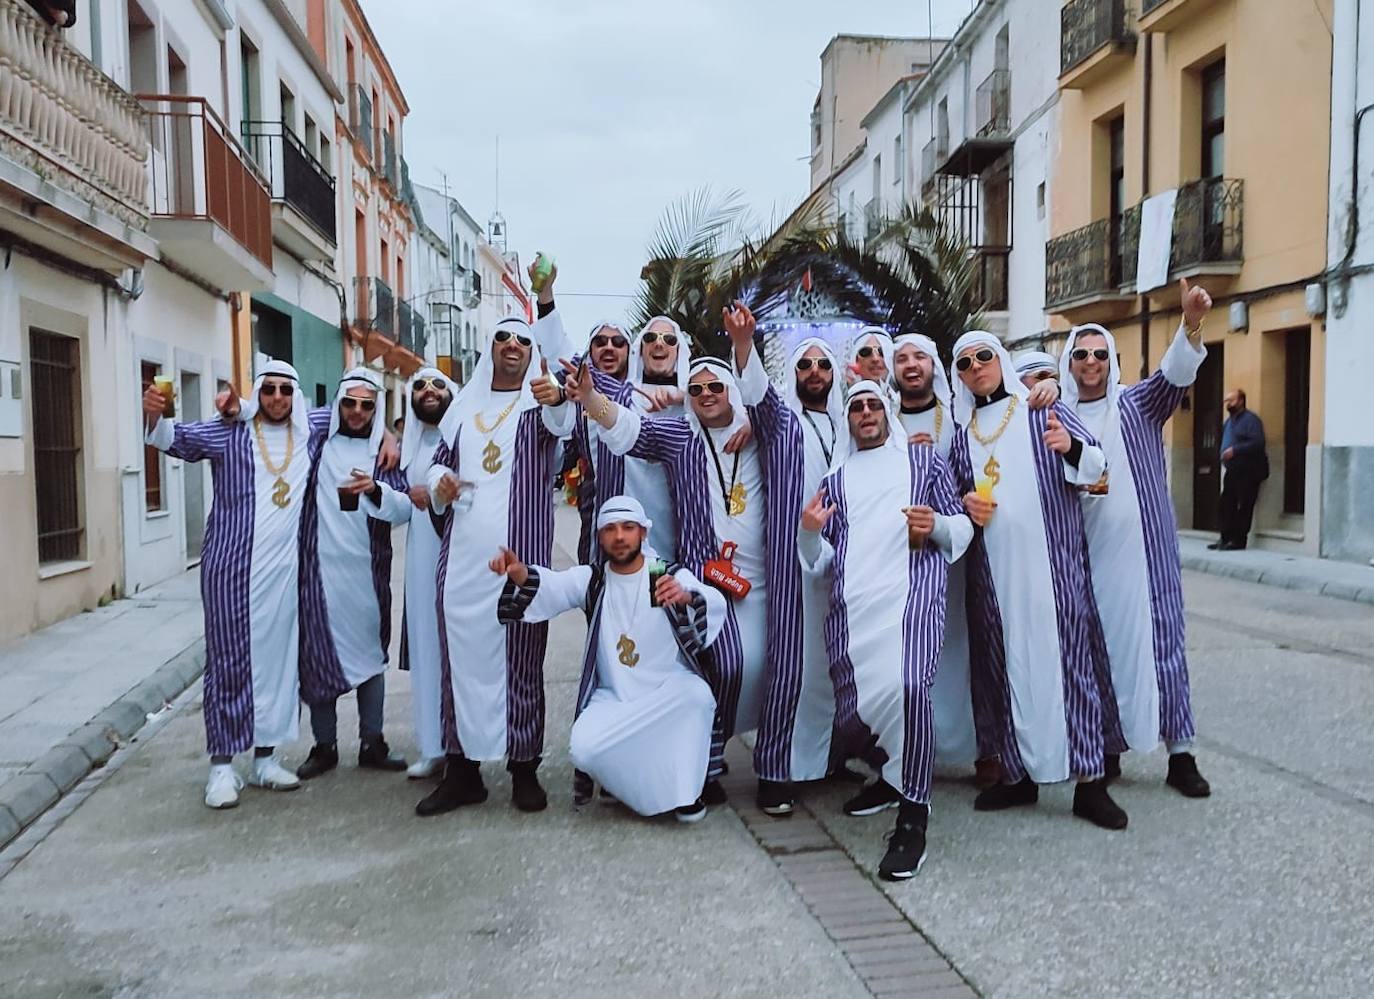 Los jeques árabes, una pareja de ninfas y la reina del abanico, premiados en el desfile de Carnaval